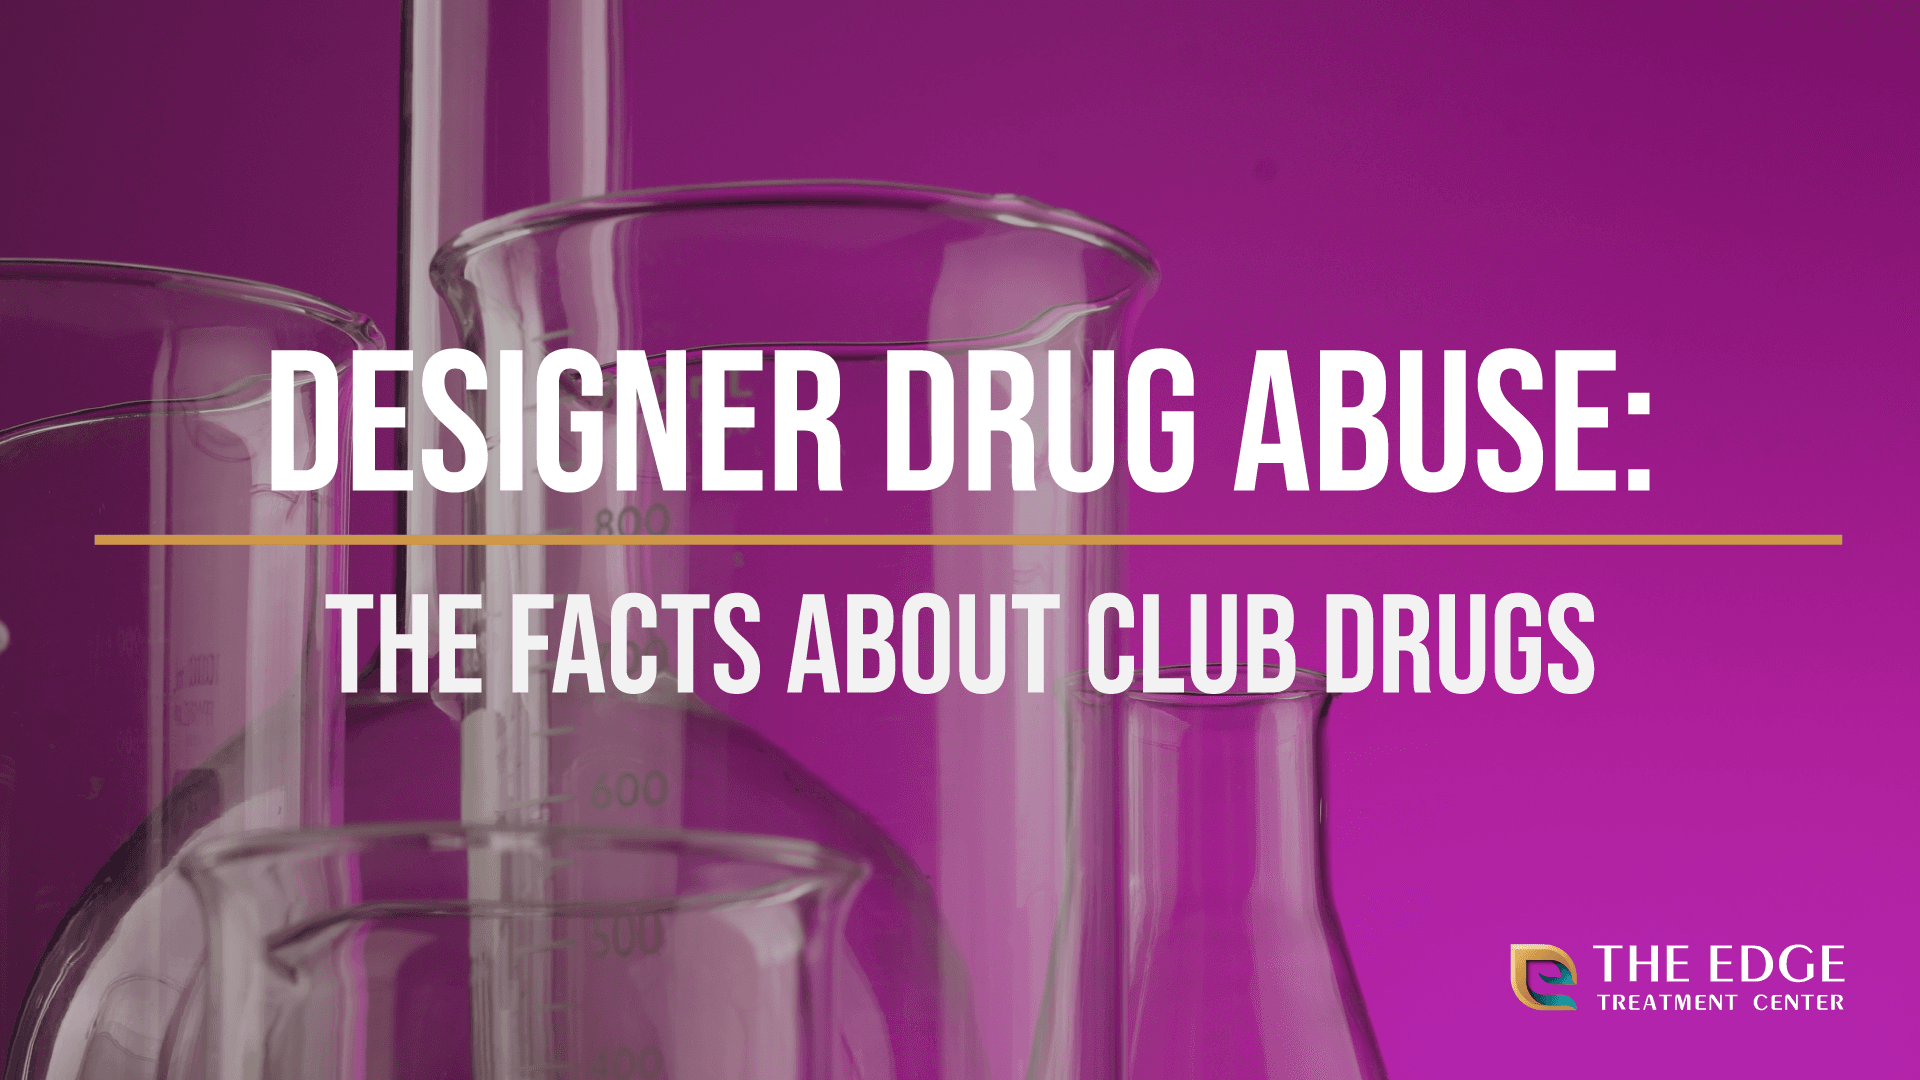 What are Designer Drugs?